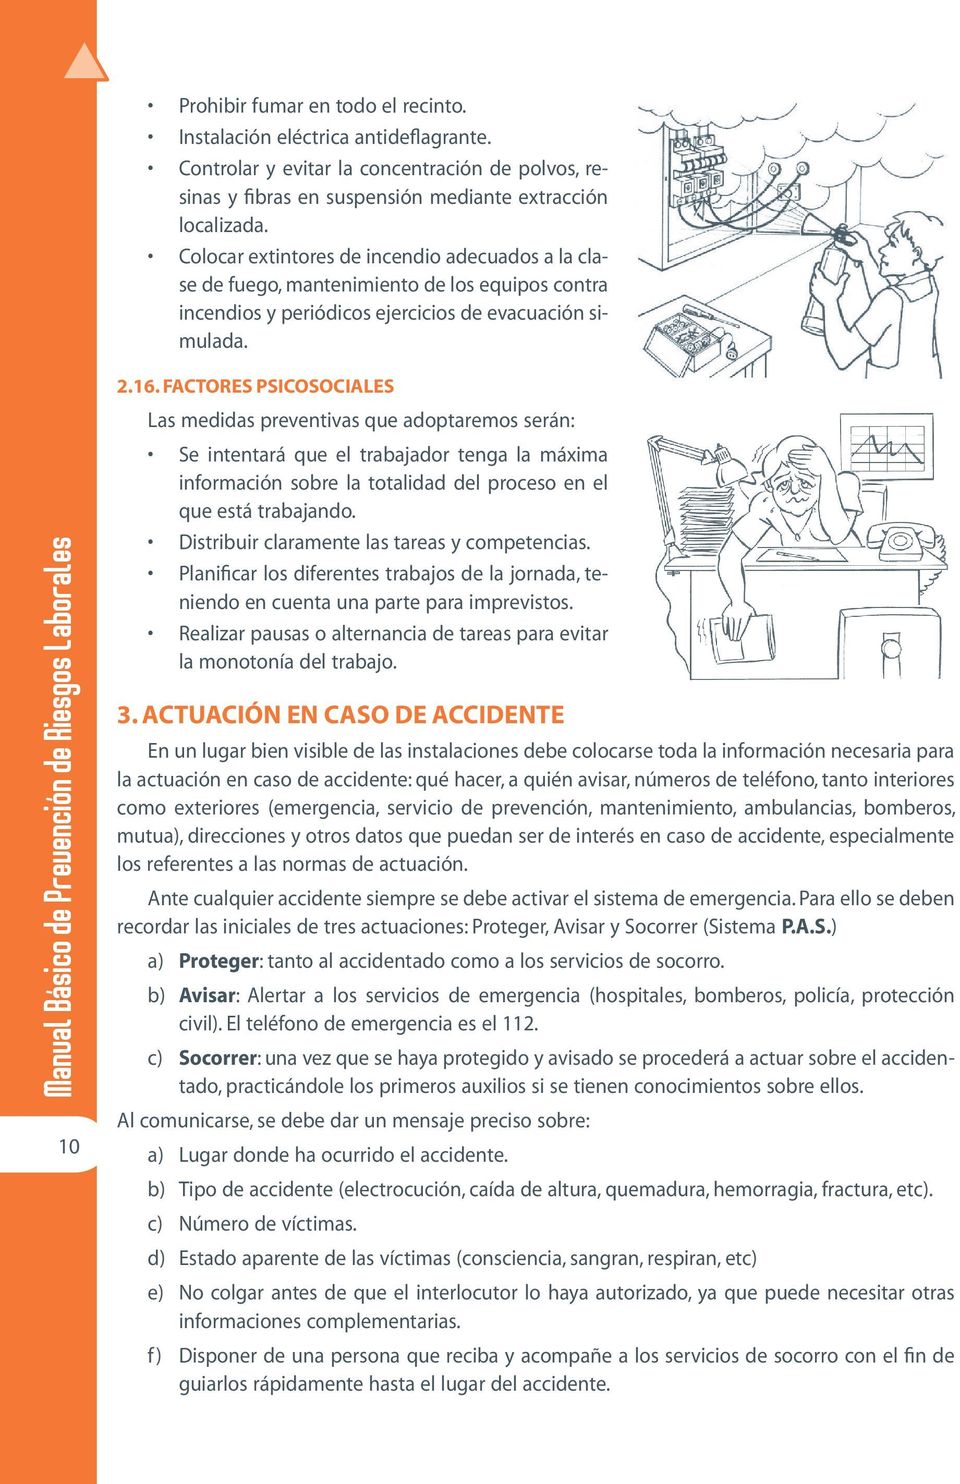 Manual Basico de Prevencion de Riesgos Laborales 10 2.16. FACTORES PSICOSOCIALES Se intentará que el trabajador tenga la máxima información sobre la totalidad del proceso en el que está trabajando.